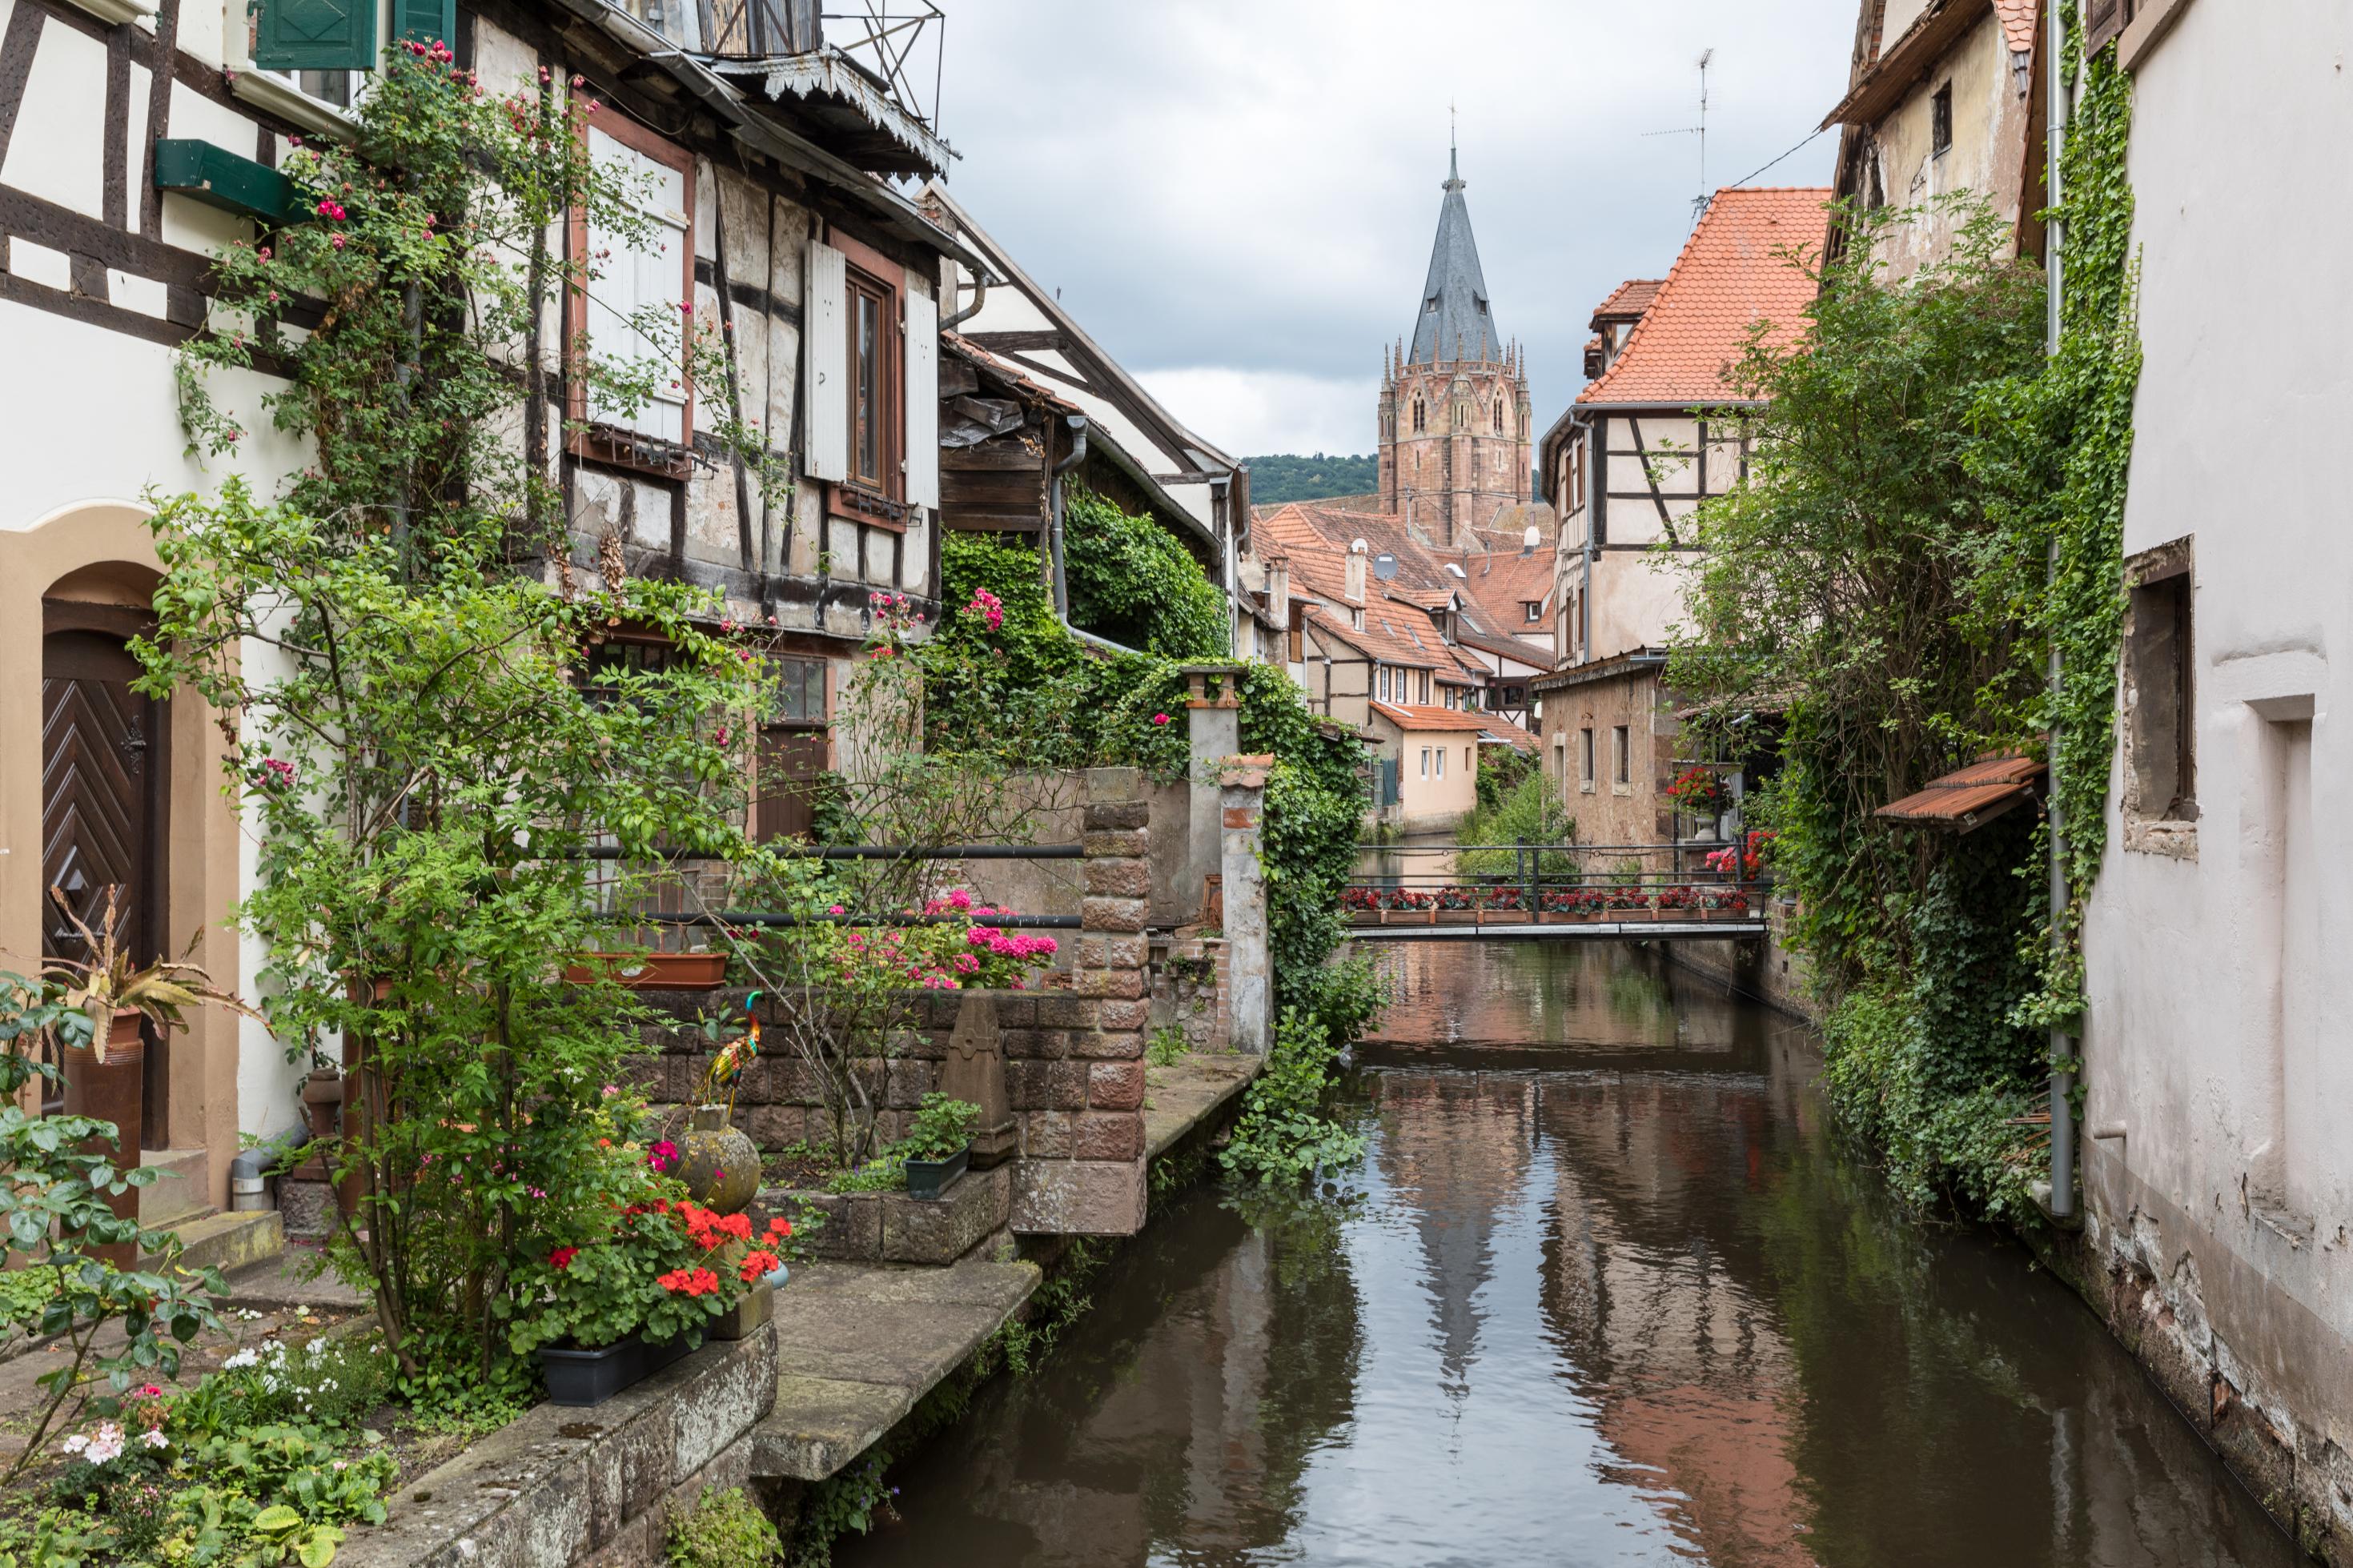 Man sieht einen Kanal und mehrere alte Fachwerkhäuser in der Stadt Wissembourg.